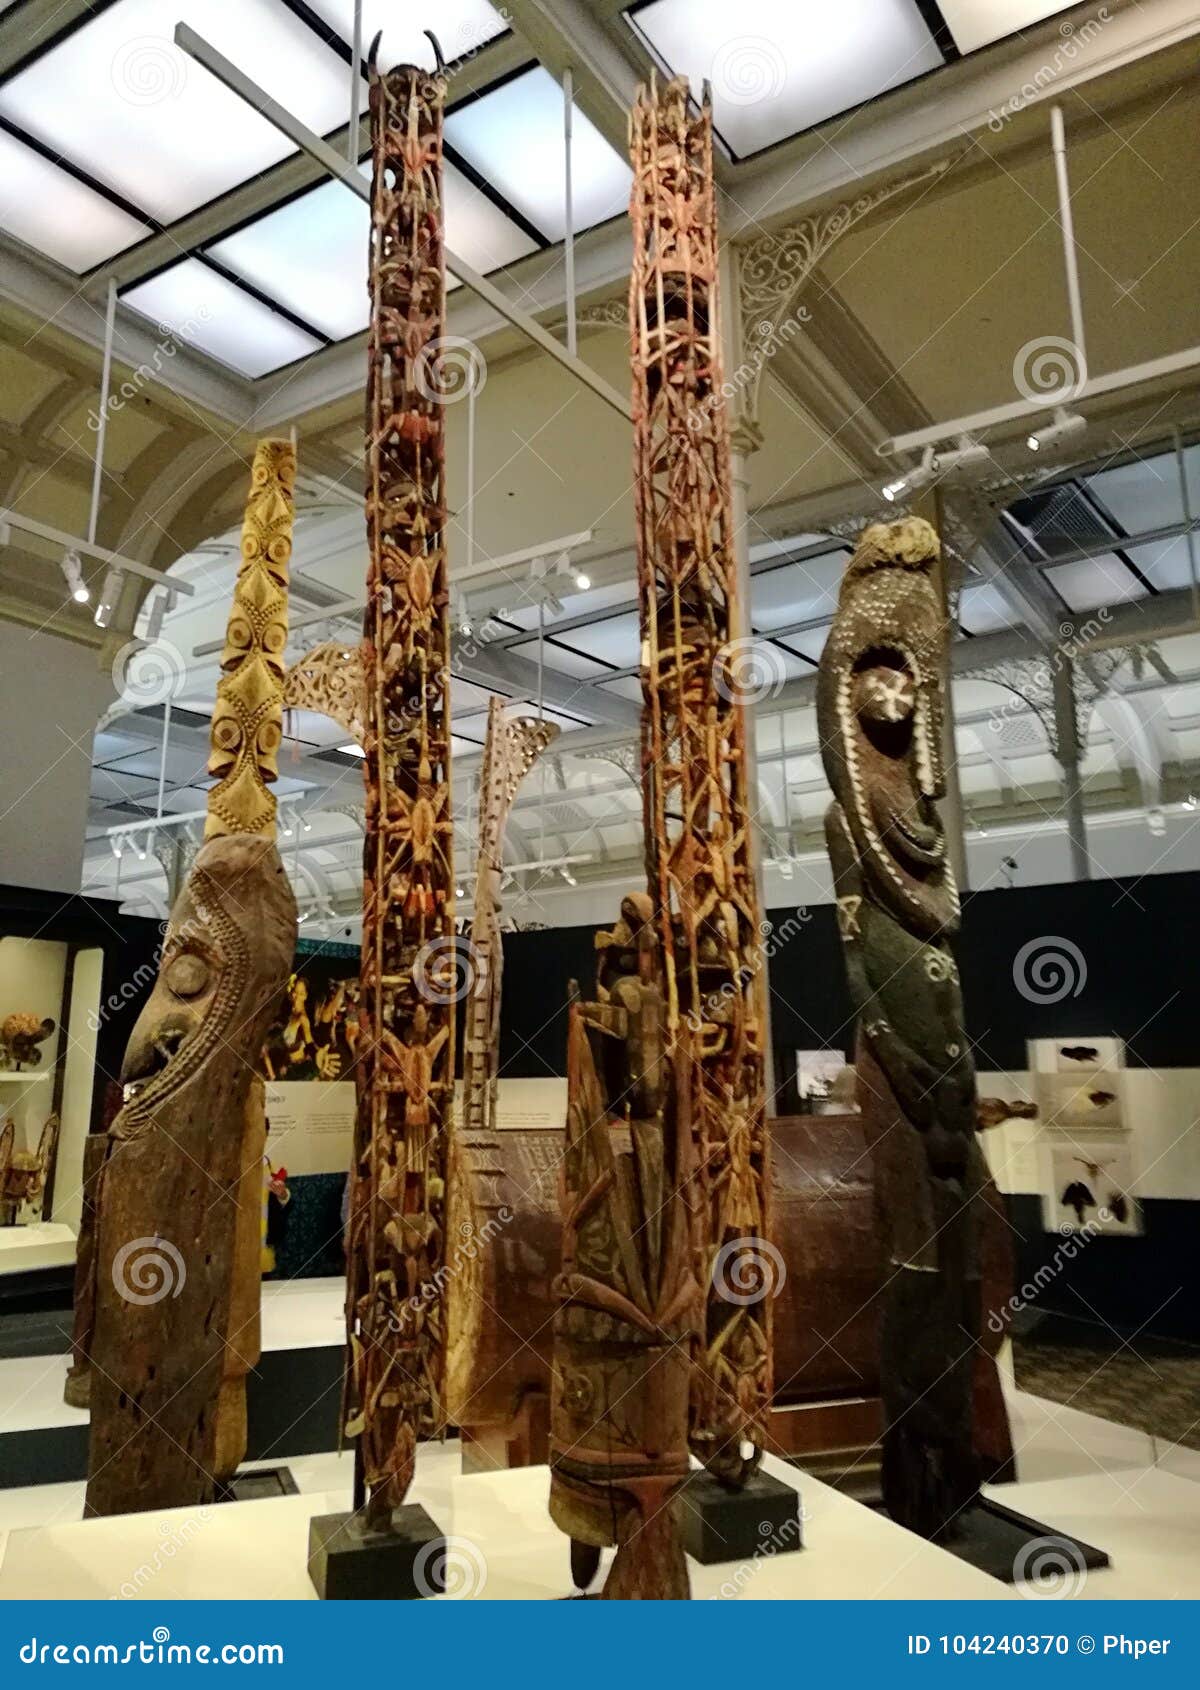 Aboriginal Totem @ Australian Museum - Image of aborigi, aborigines: